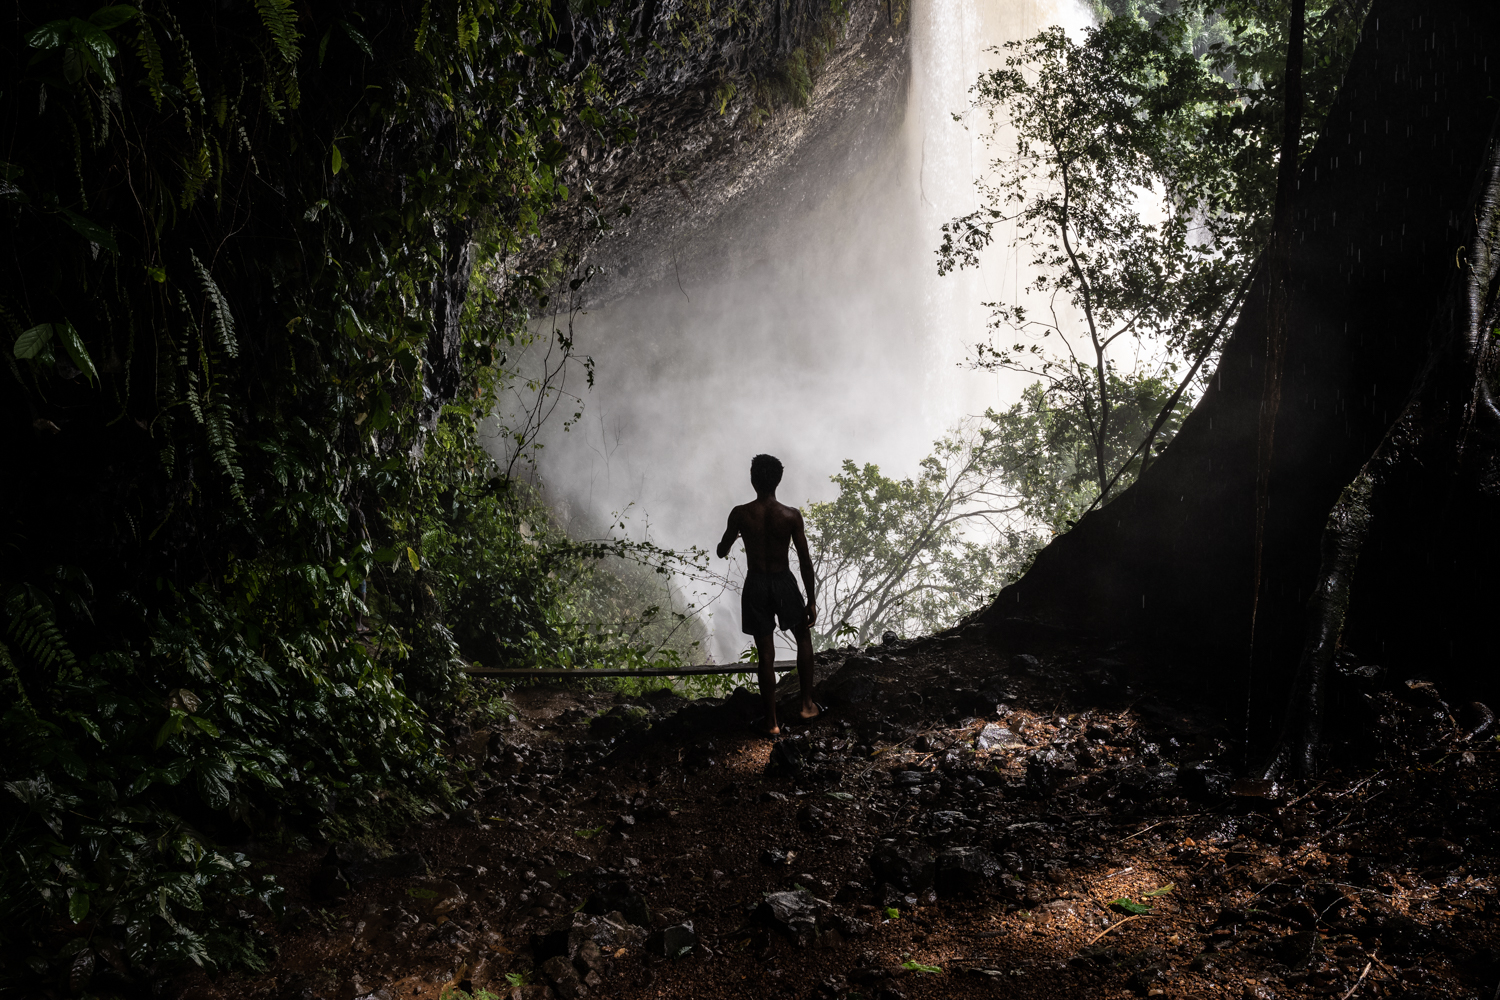 Agbokim Waterfall Nigeria